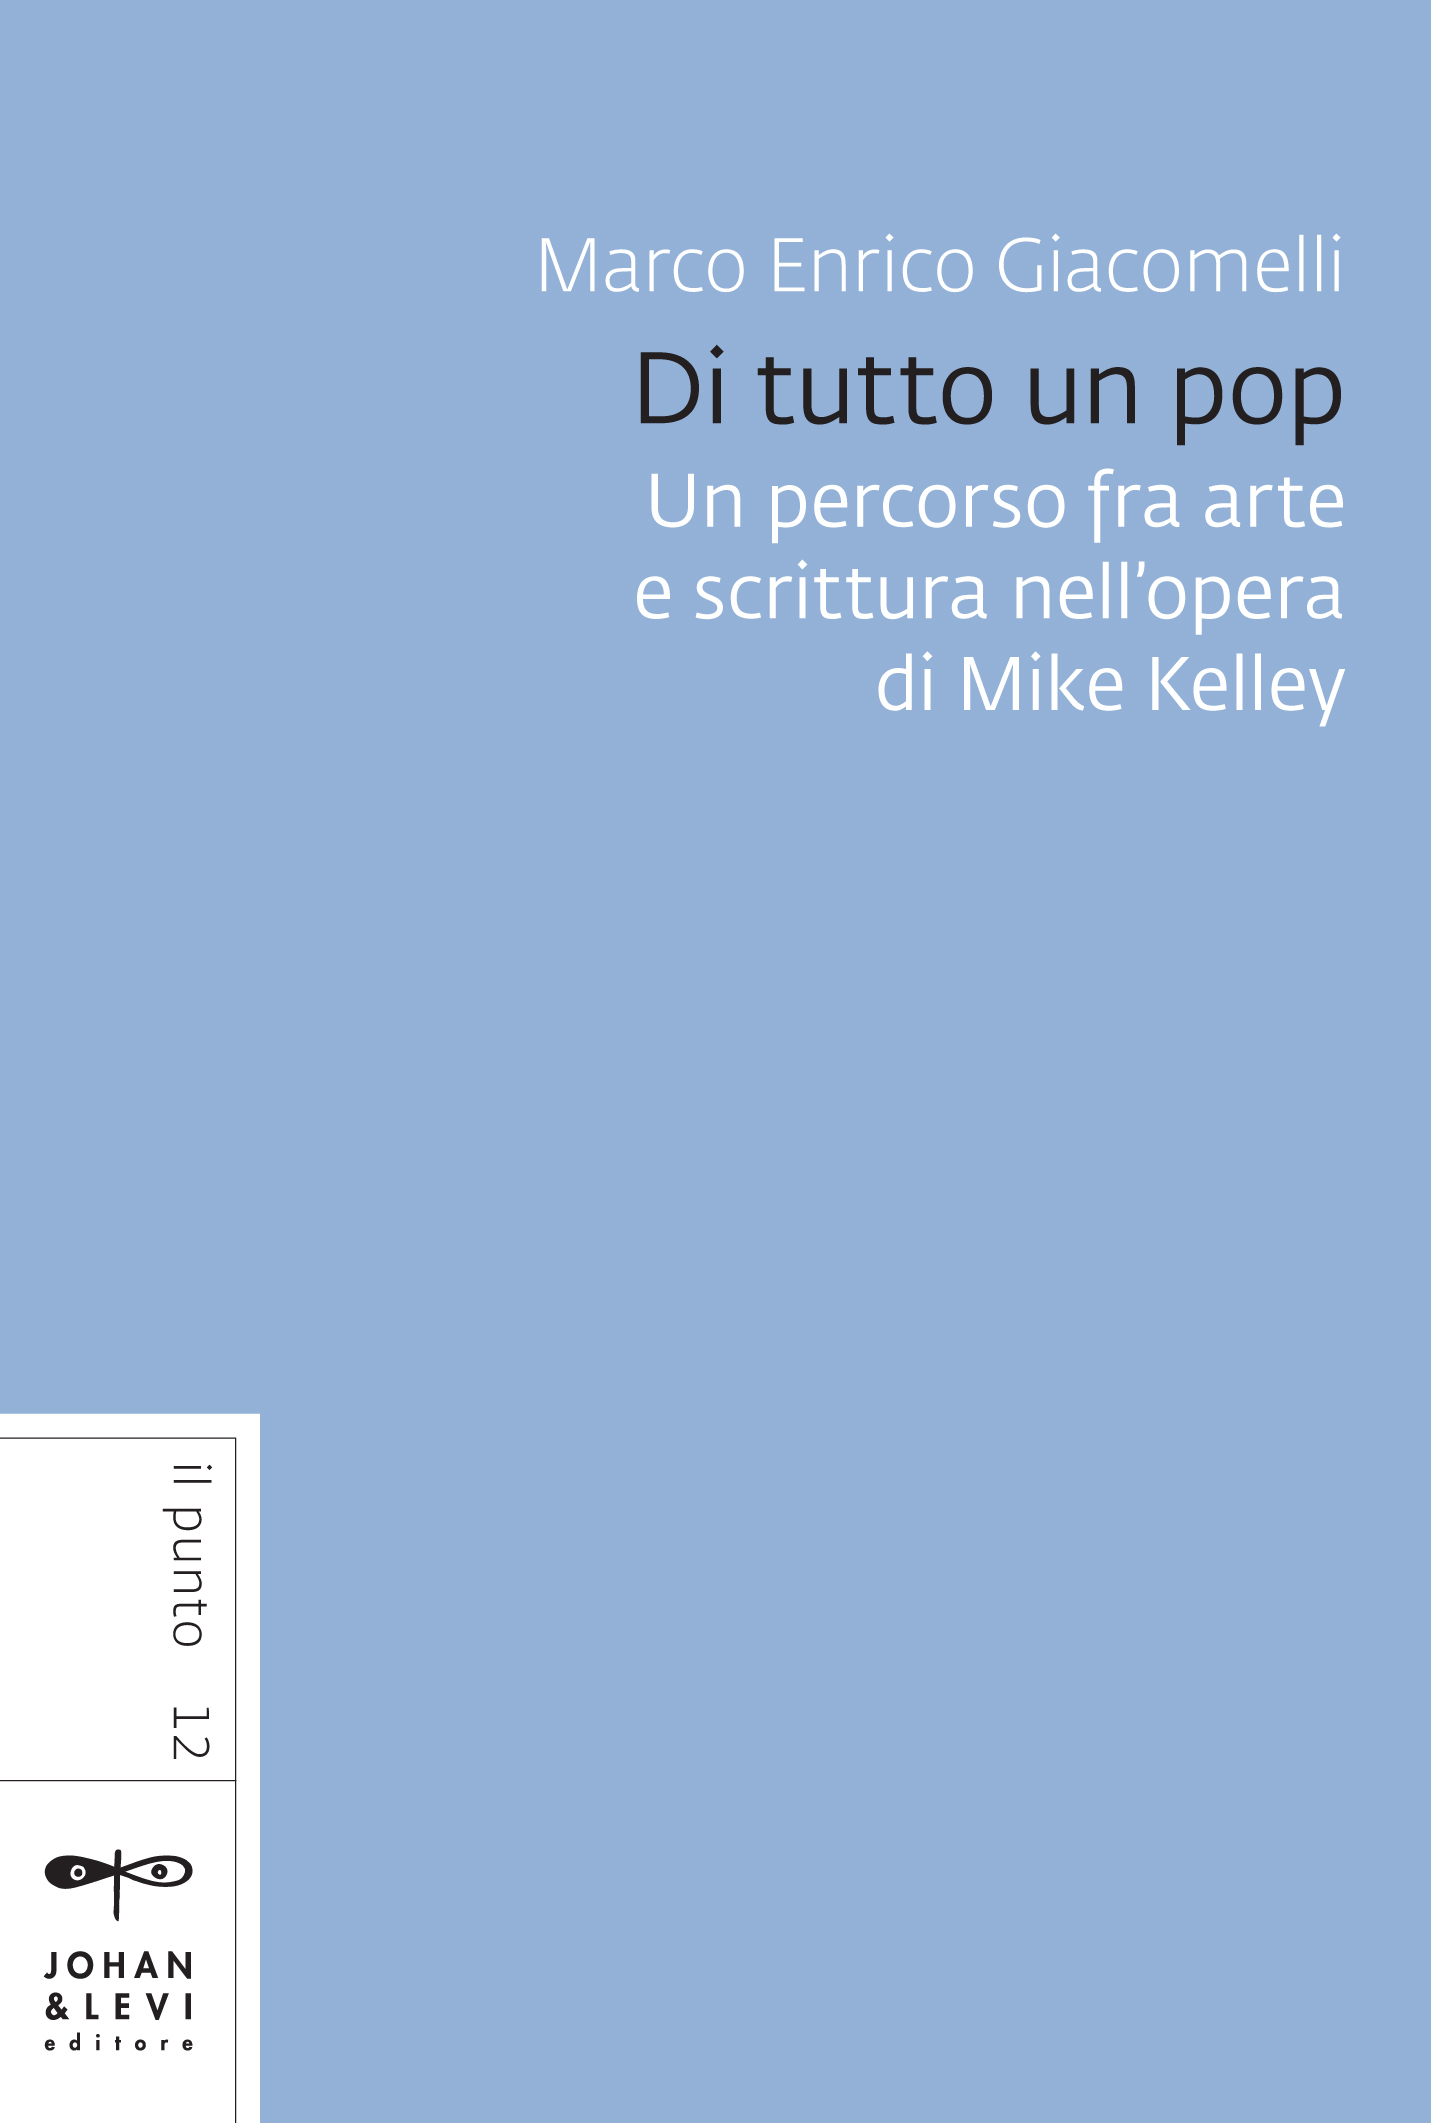 Marco Enrico Giacomelli – Di tutto un pop. Un percorso fra arte e scrittura nell’opera di Mike Kelley